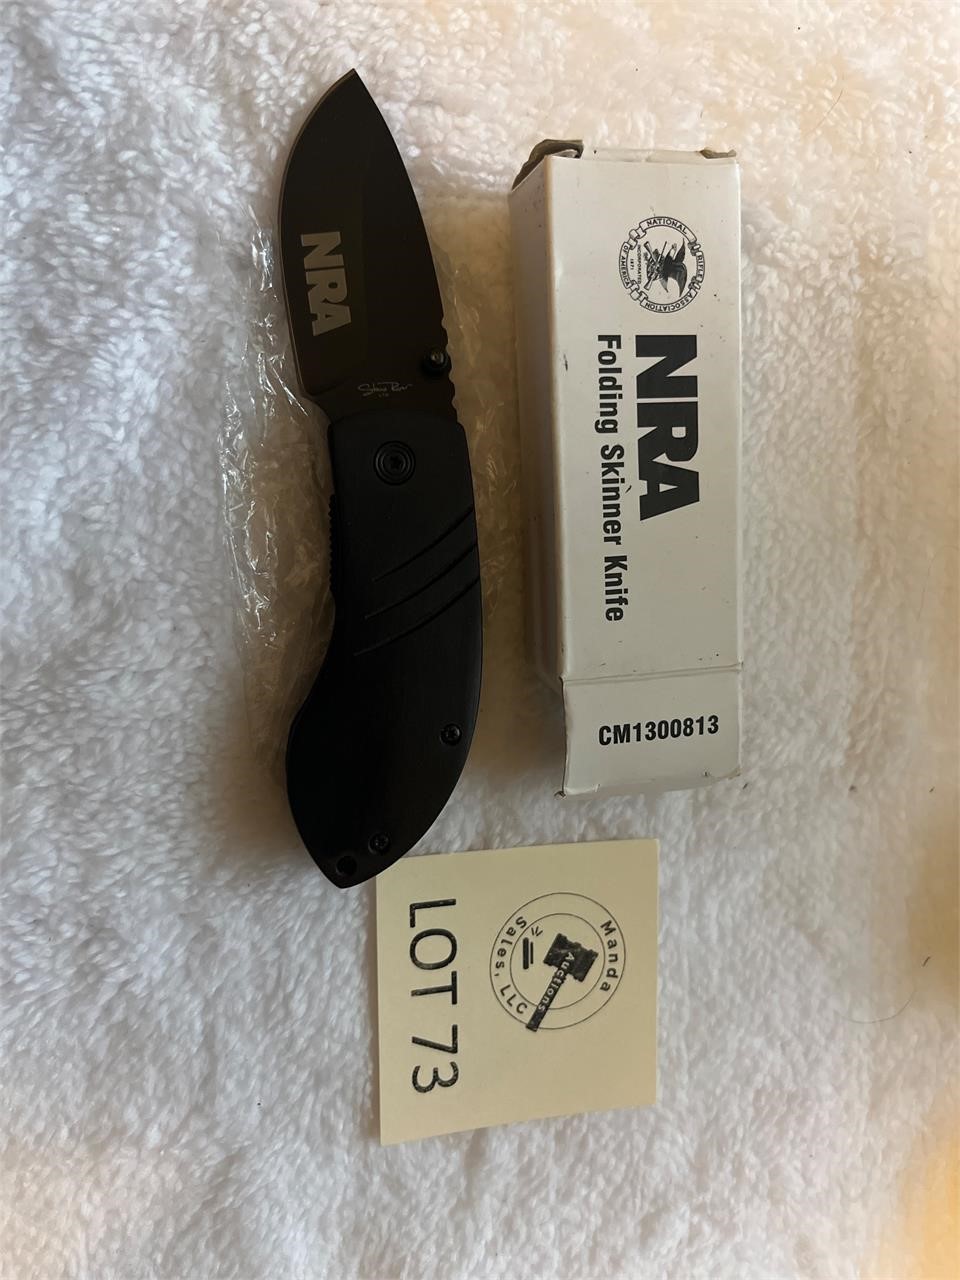 NRA Folding Skinner Knife New in Box